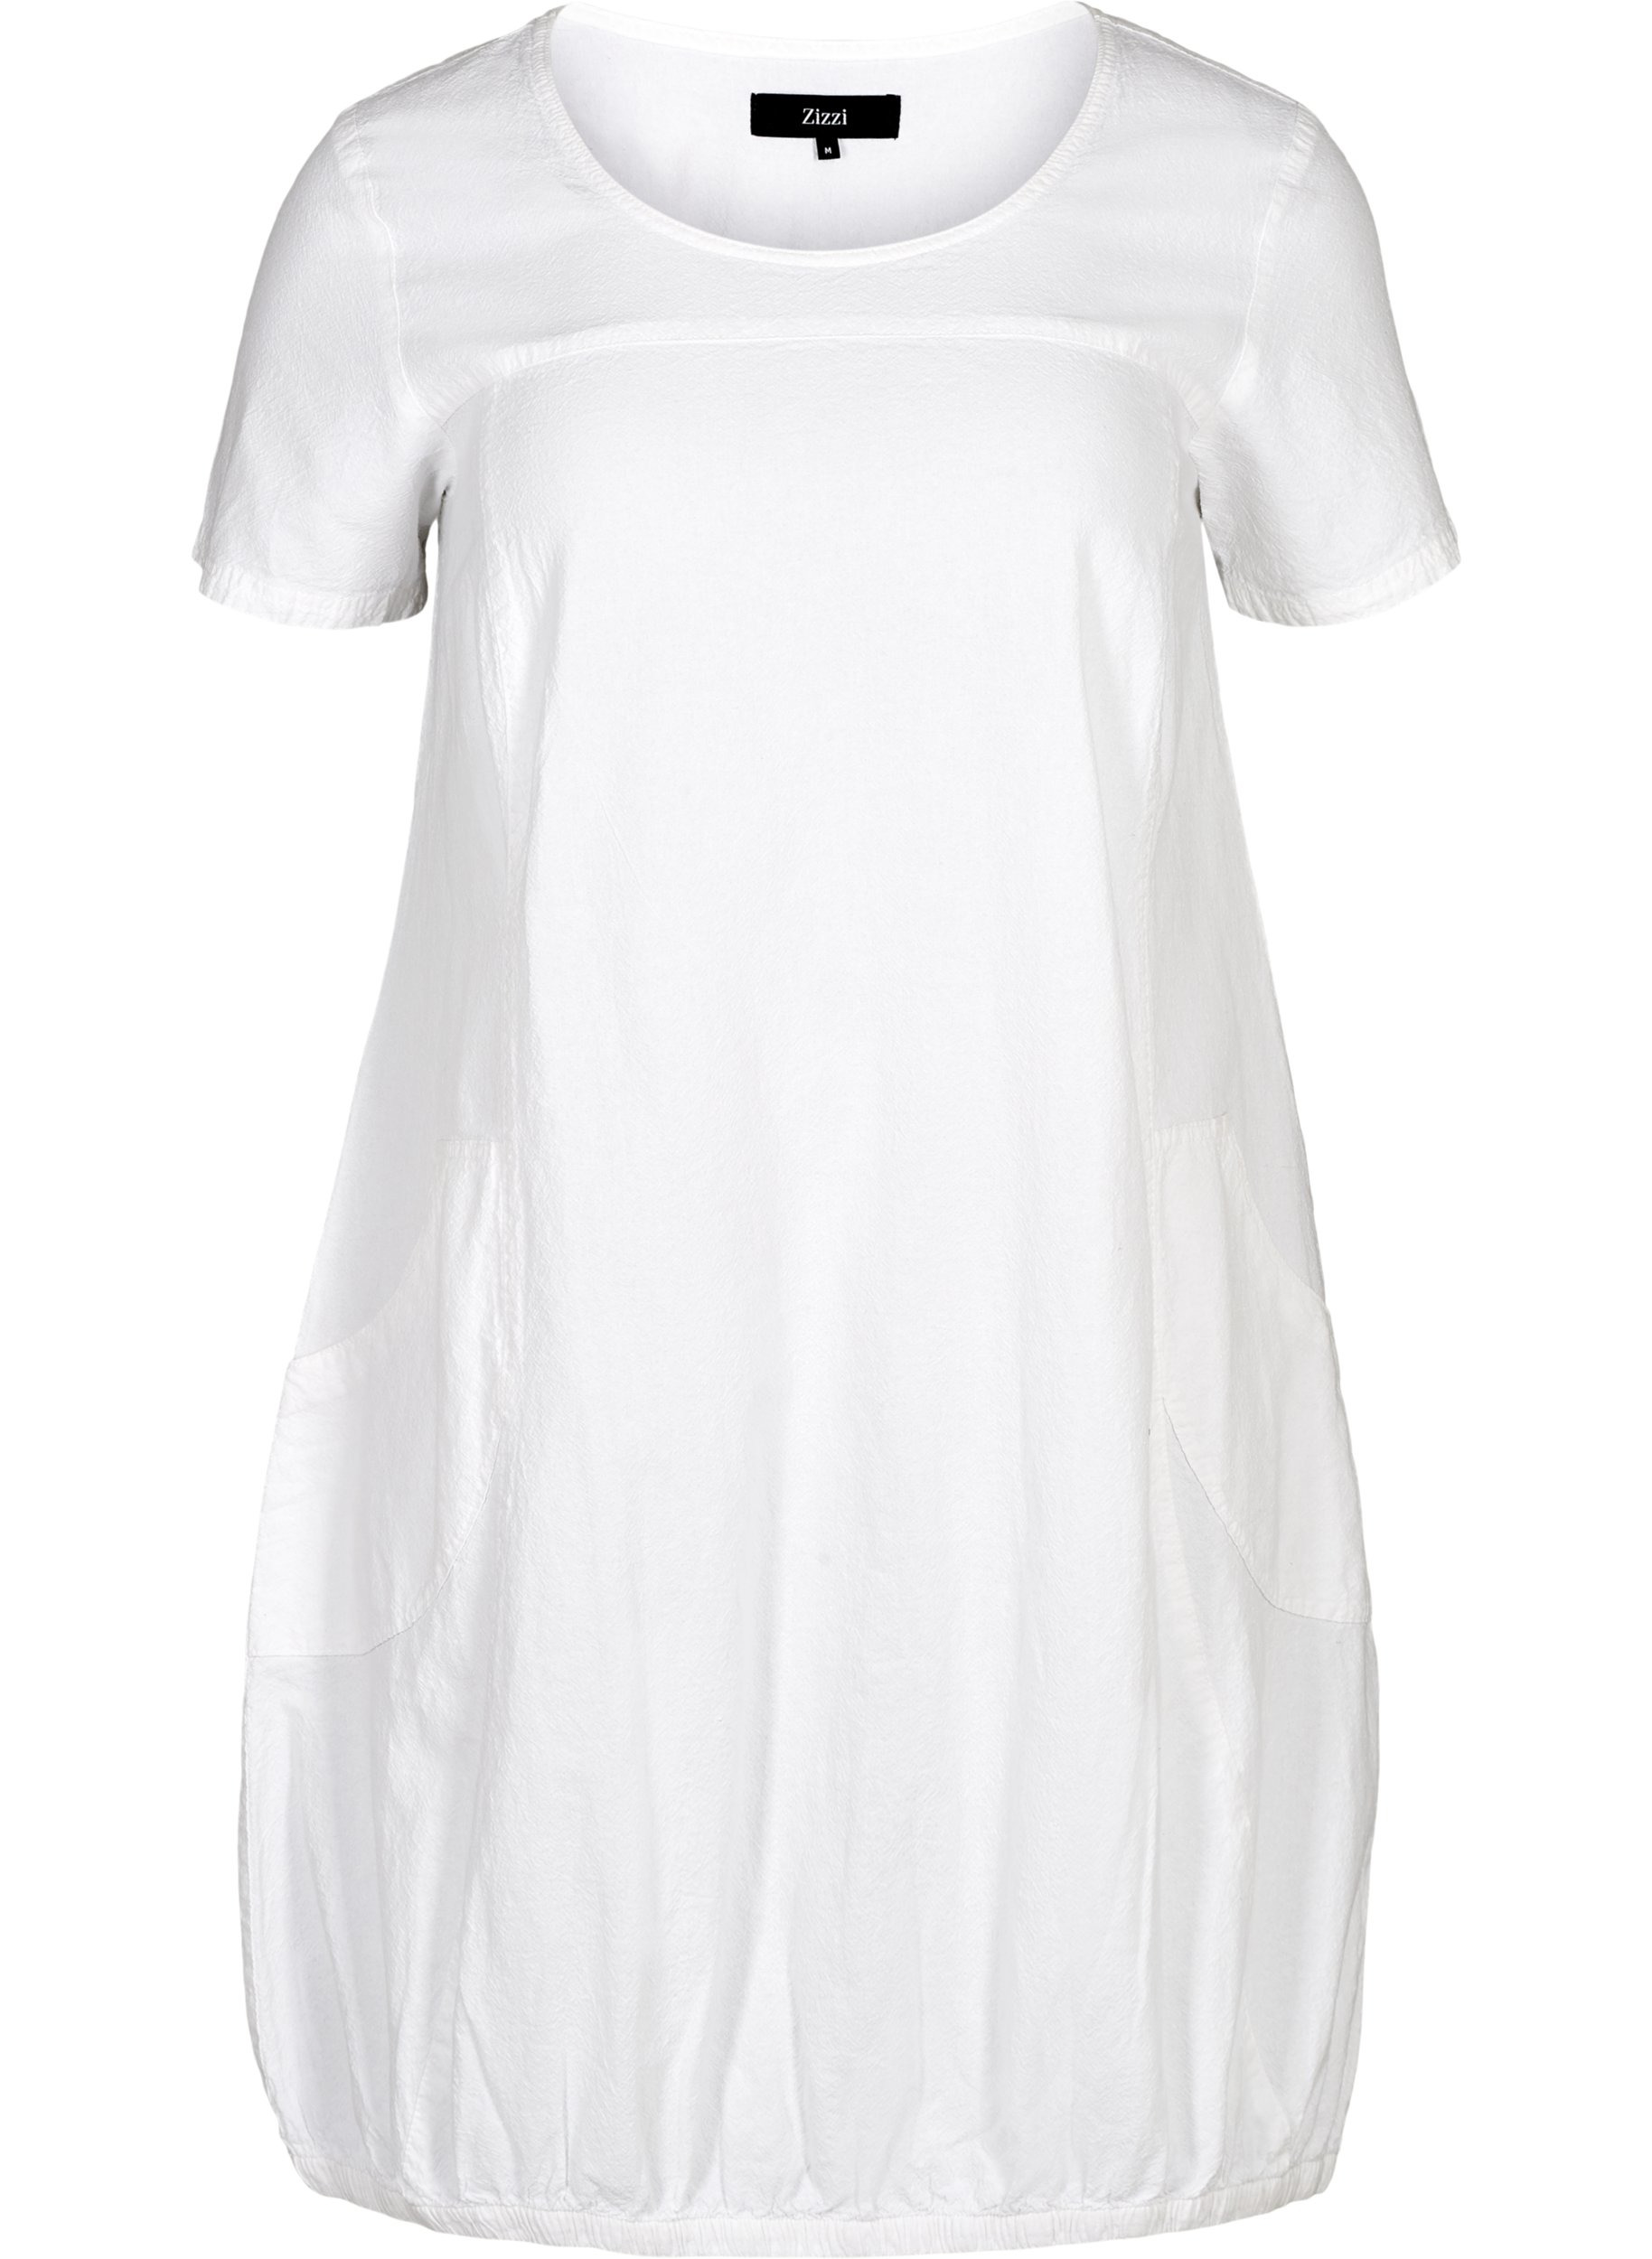 Kortærmet kjole i bomuld, White